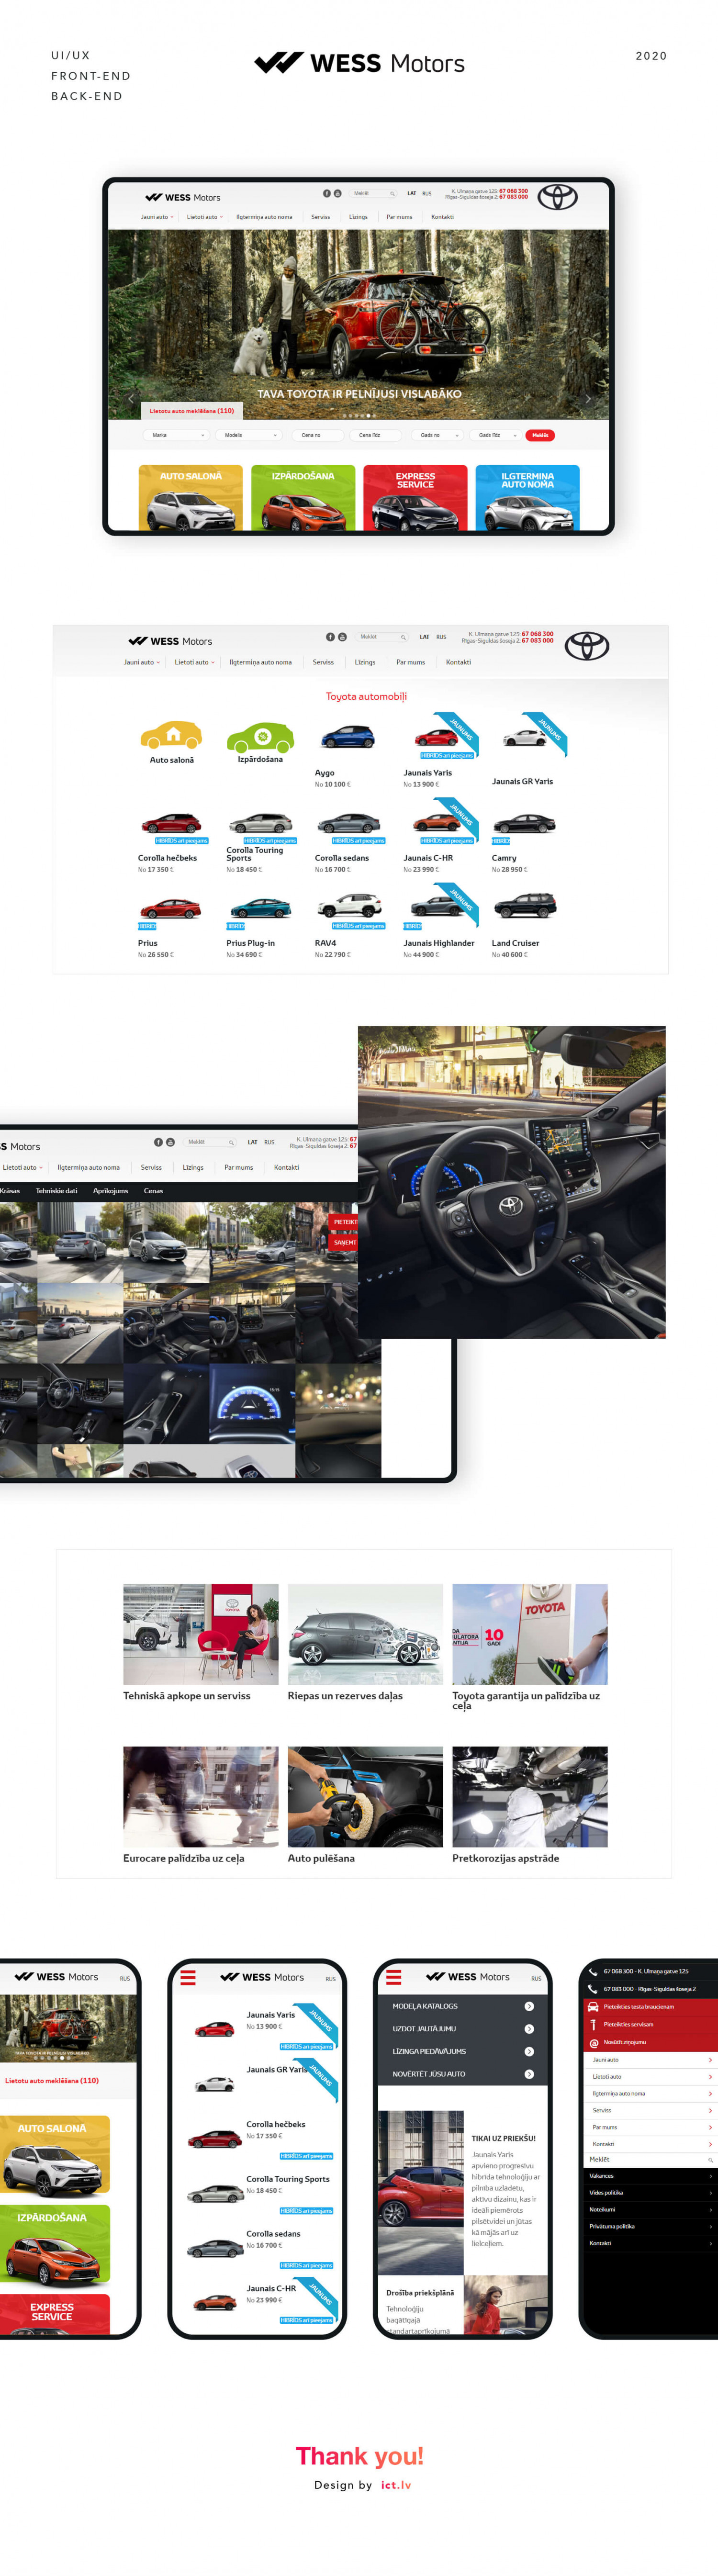 WESS Motors website development